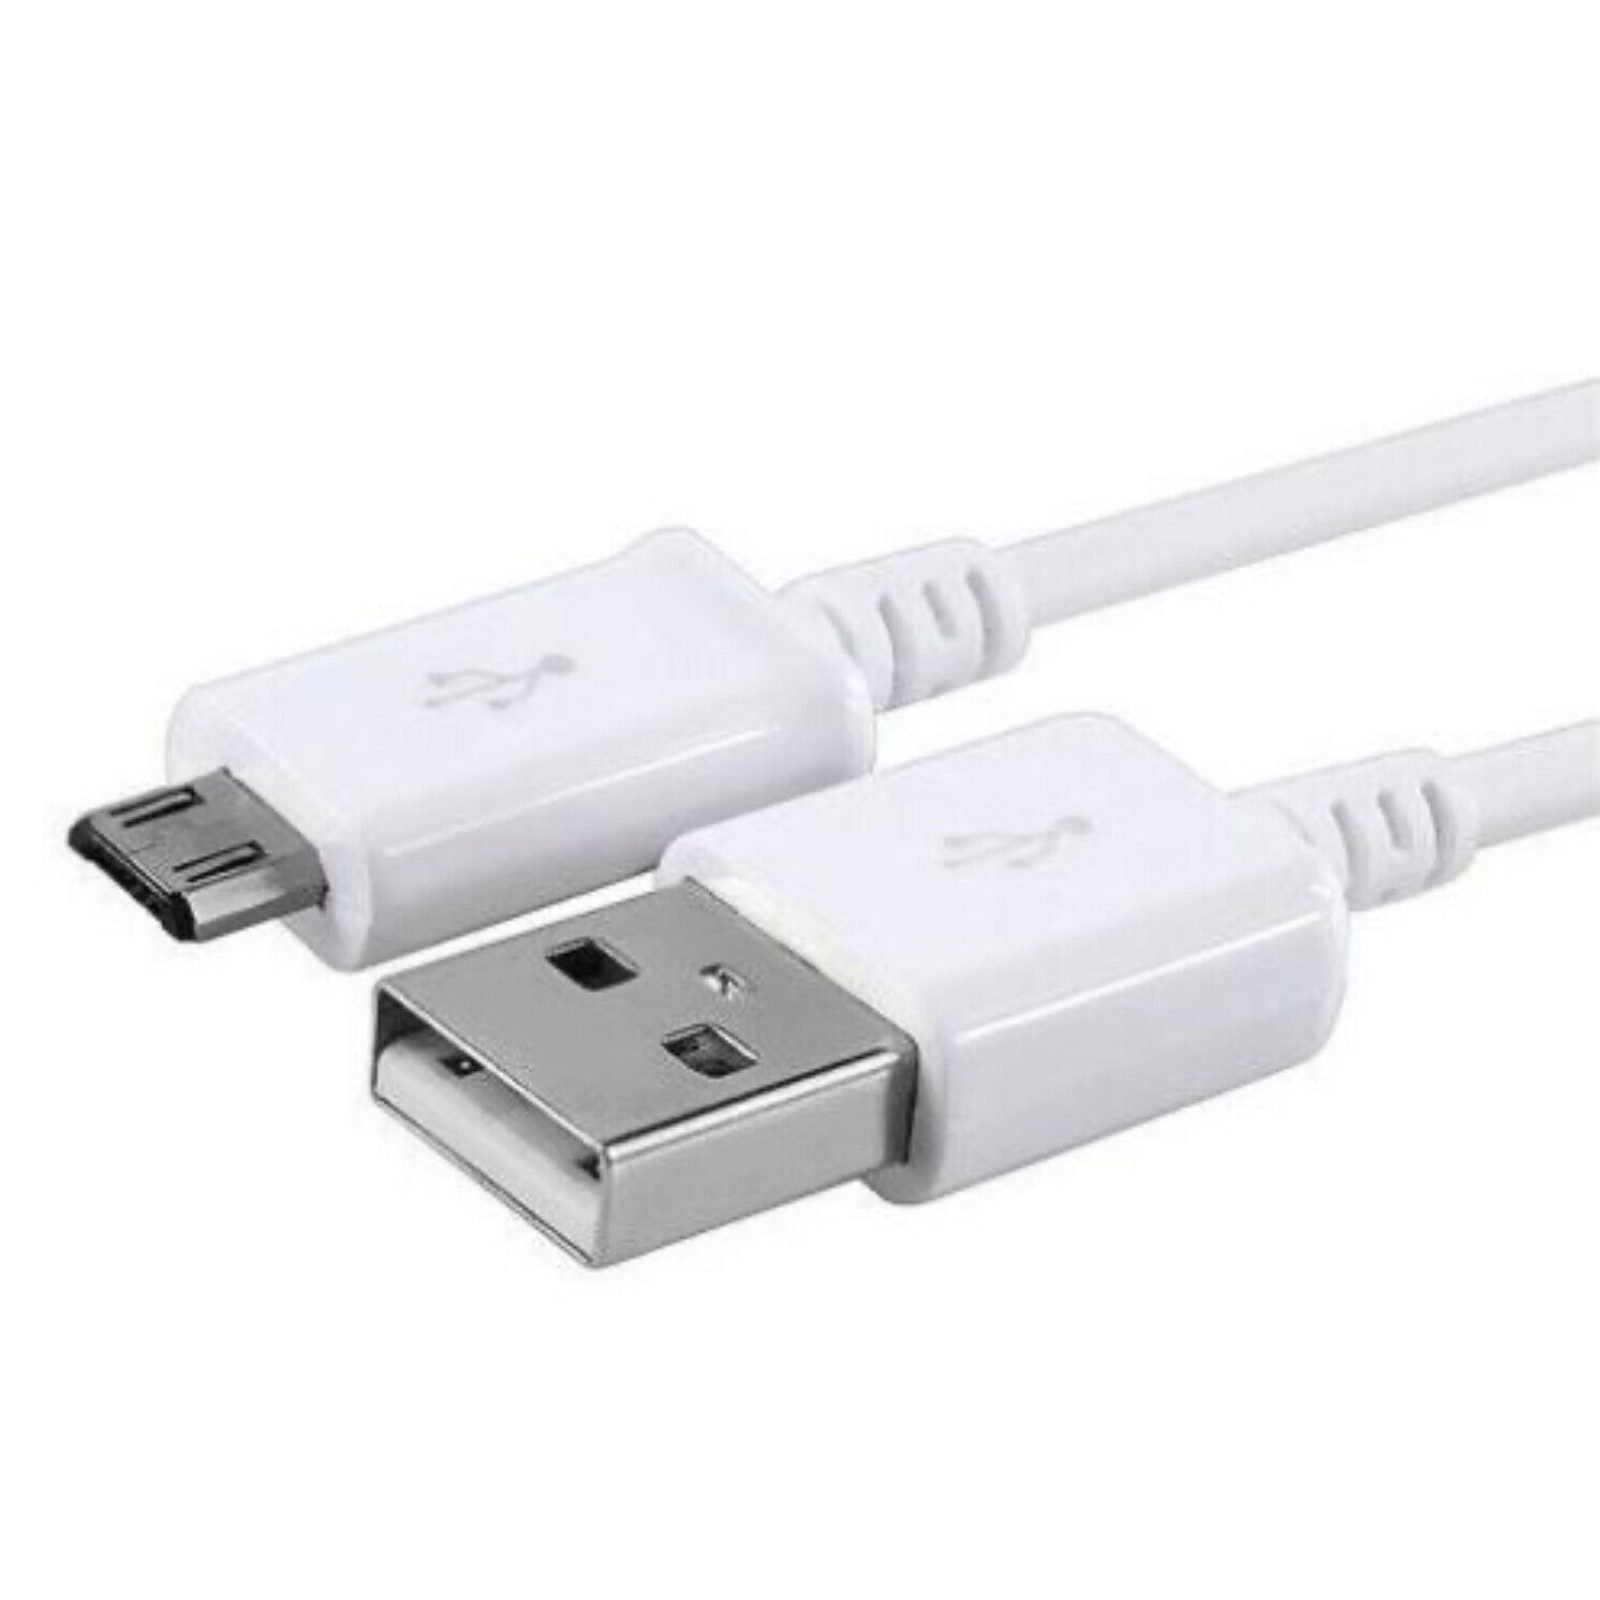 IK-Handelsgruppe Ladekabel Für Samsung, Smartphone-Kabel, USB Typ B, USB Typ A, Kabellänge 1 Meter, Weiß, Schnellladung